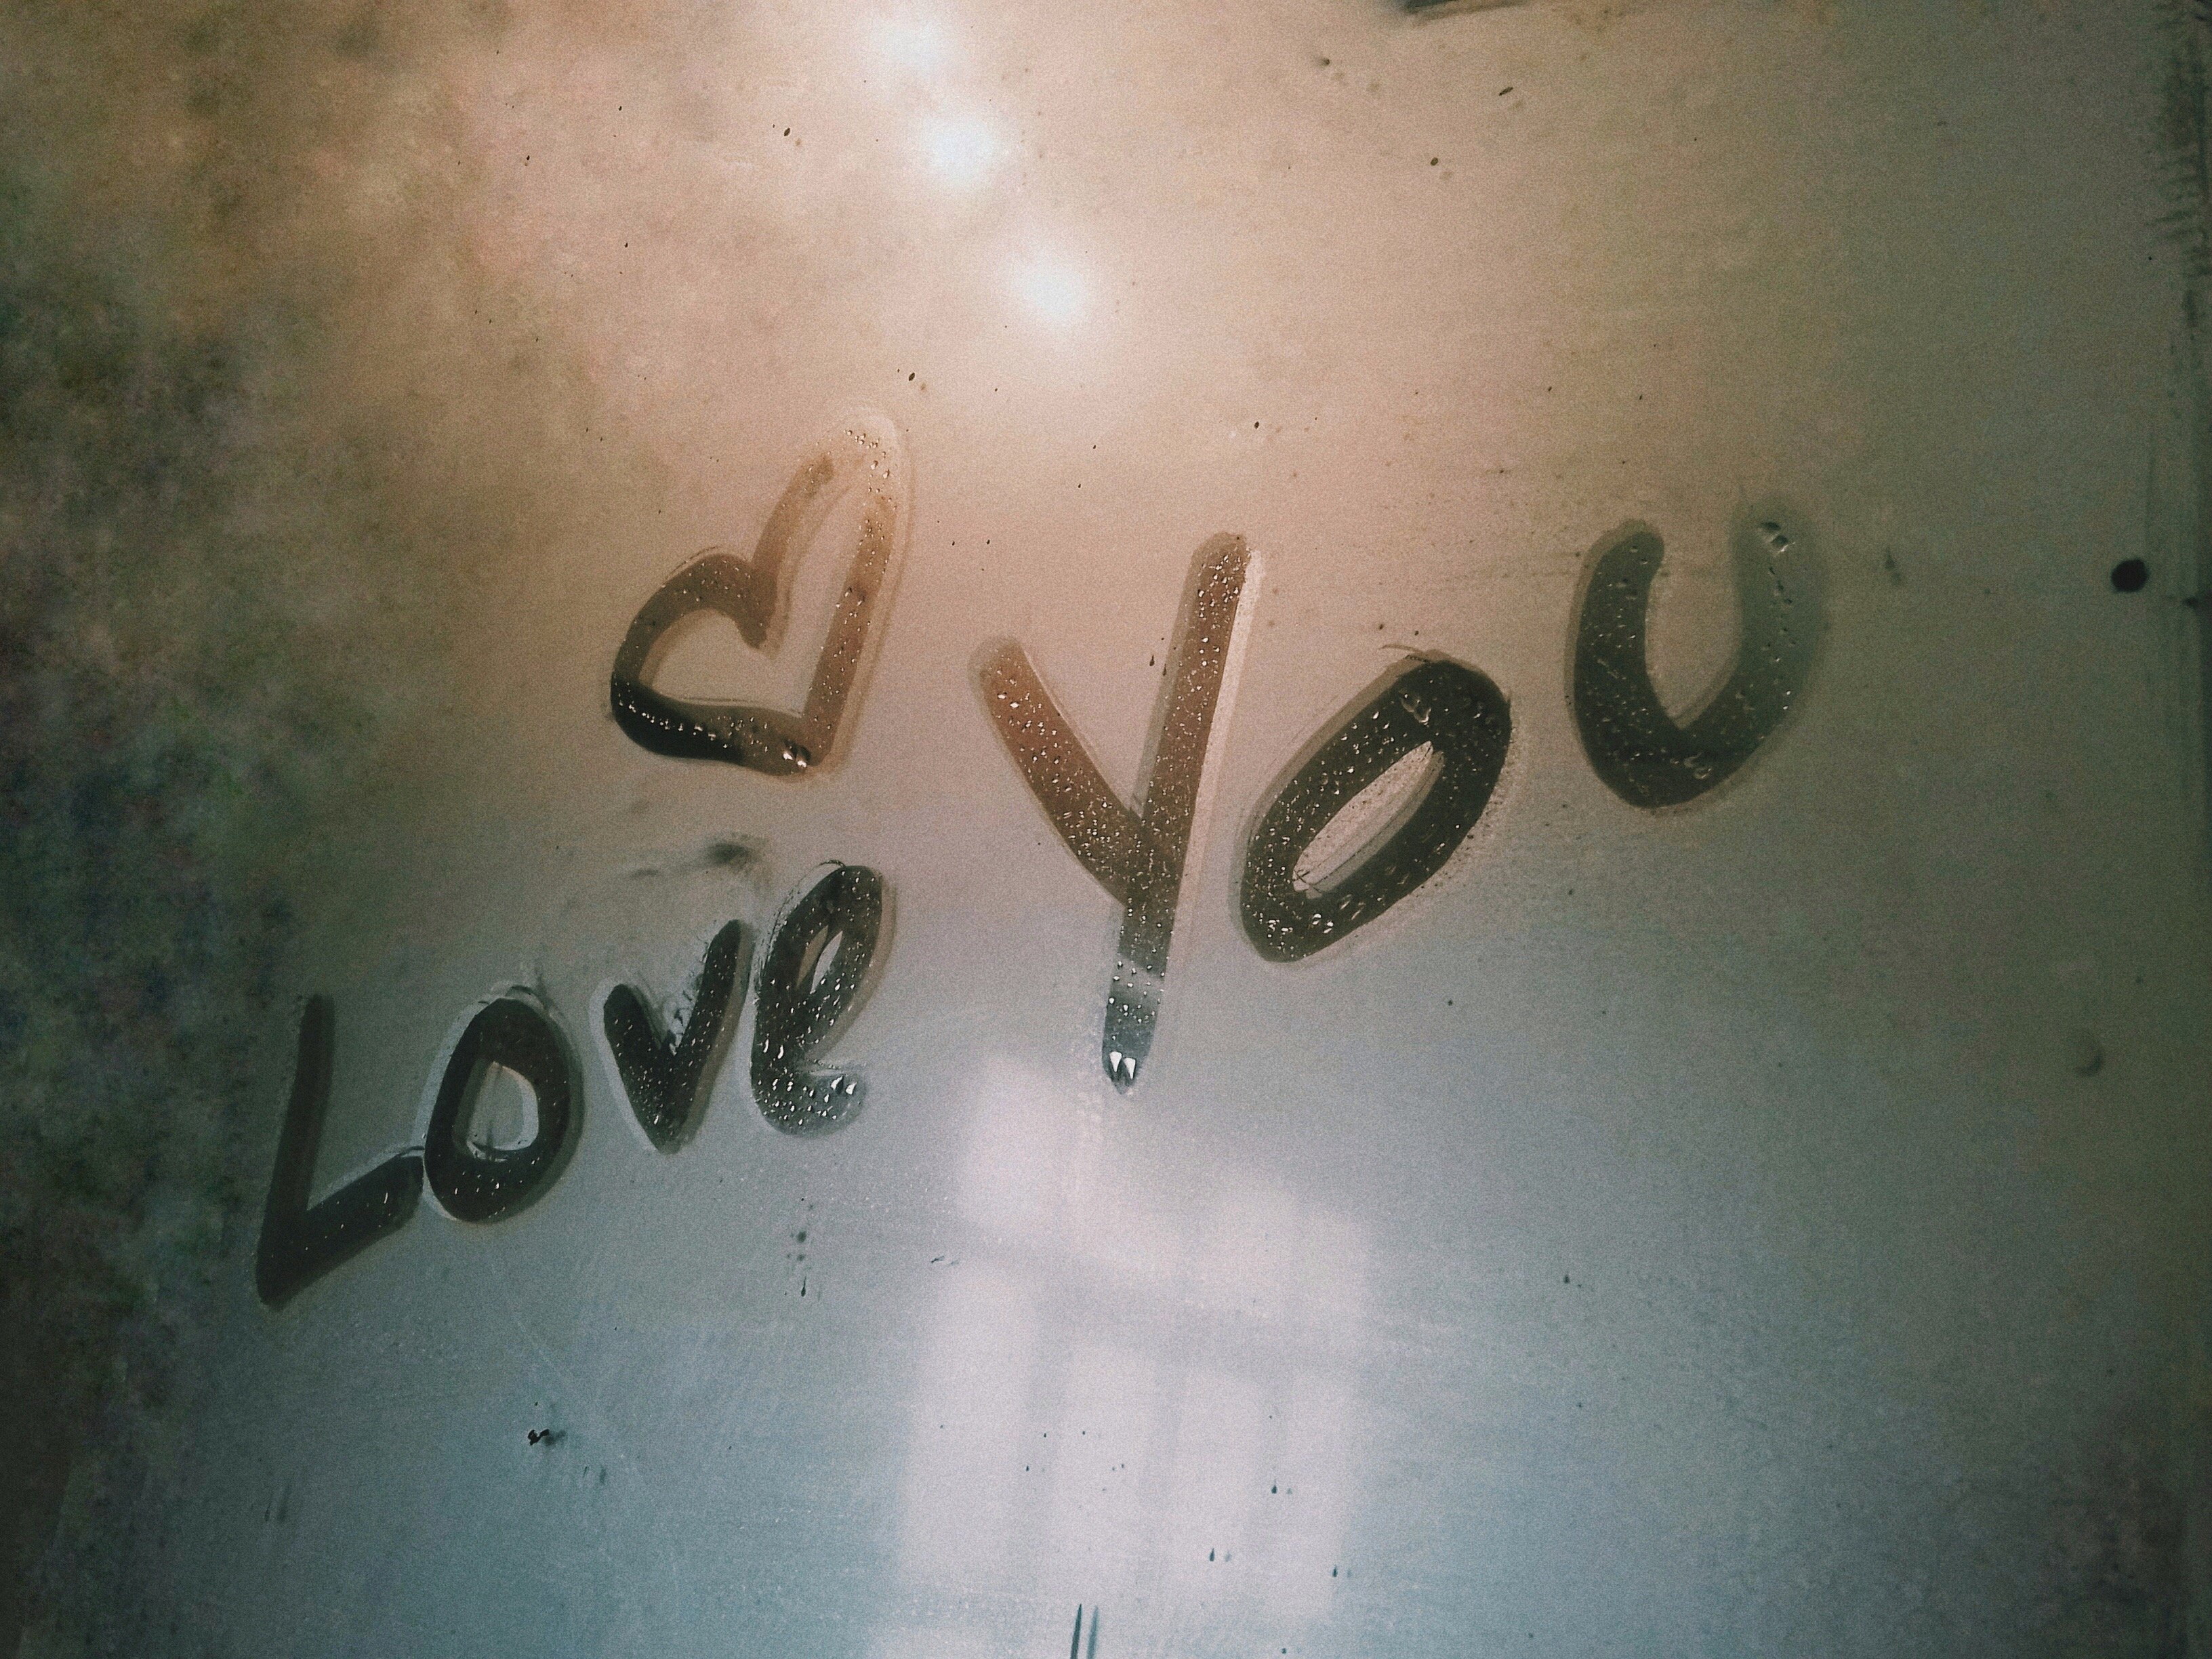 Vidro embaçado escrito 'eu te amo' em inglês